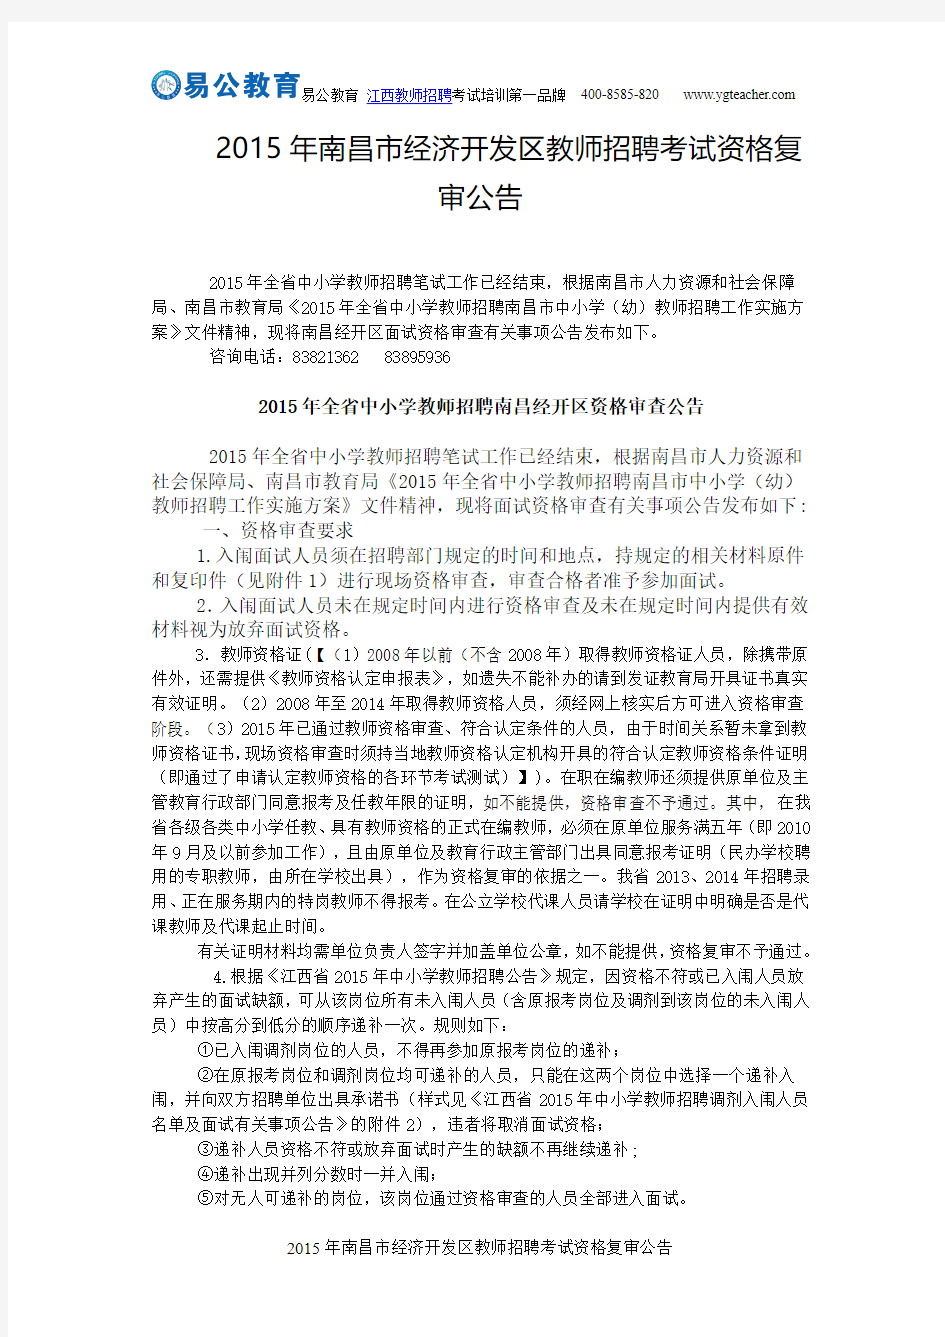 2015年南昌市经济开发区教师招聘考试资格复审公告